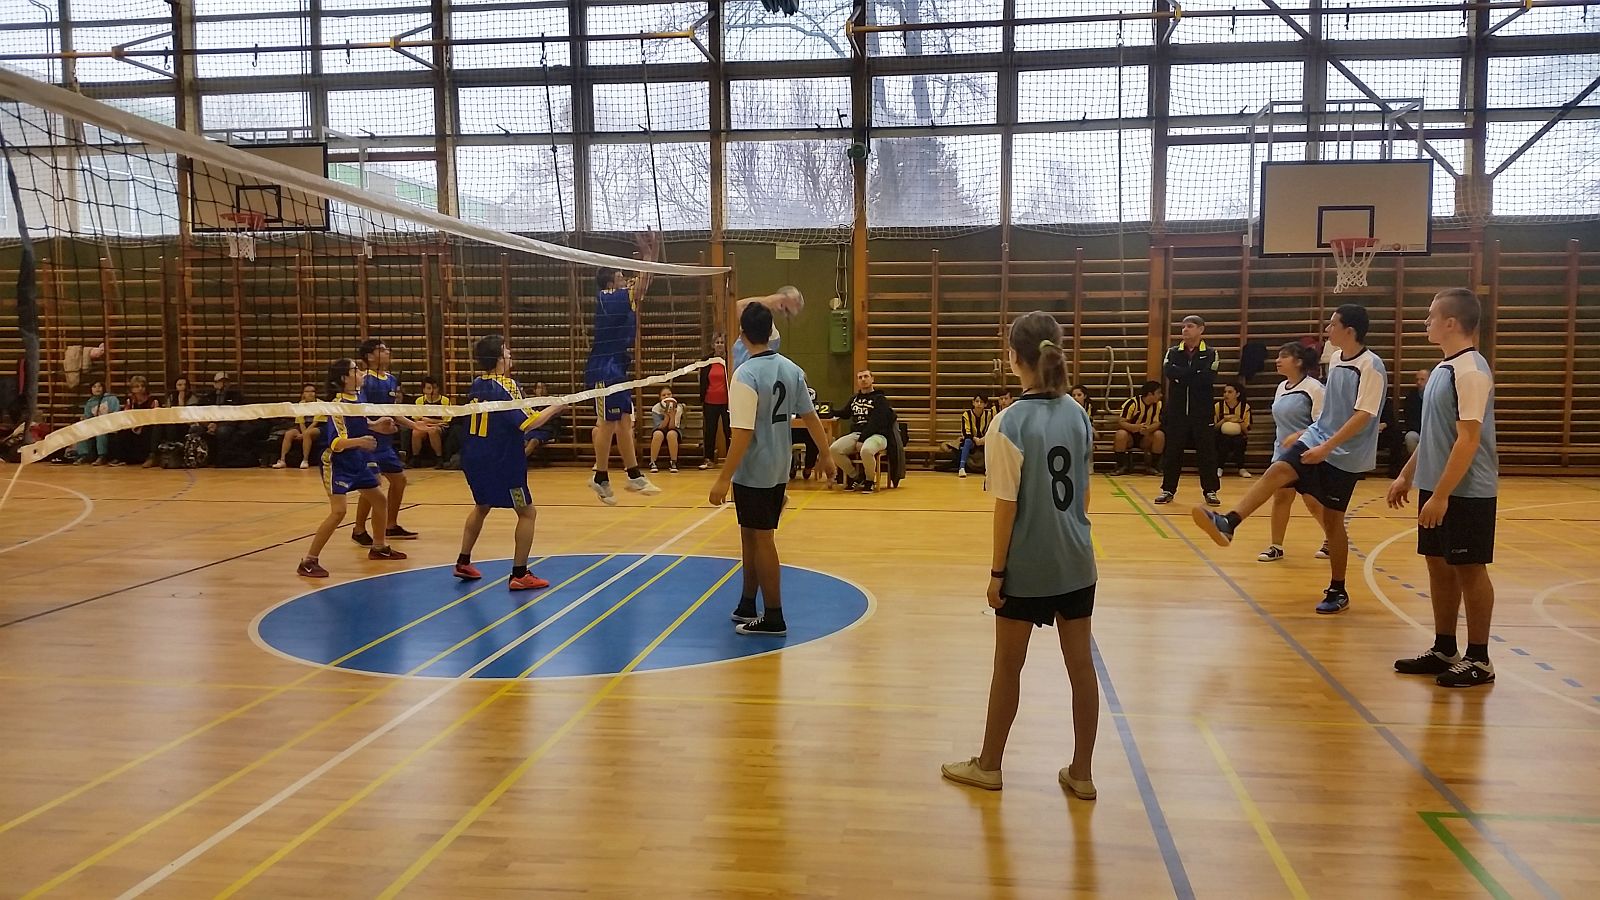 A Zsinórlabda Diákolimpia Országos Döntőjének adott helyet a Hétvezér Iskola